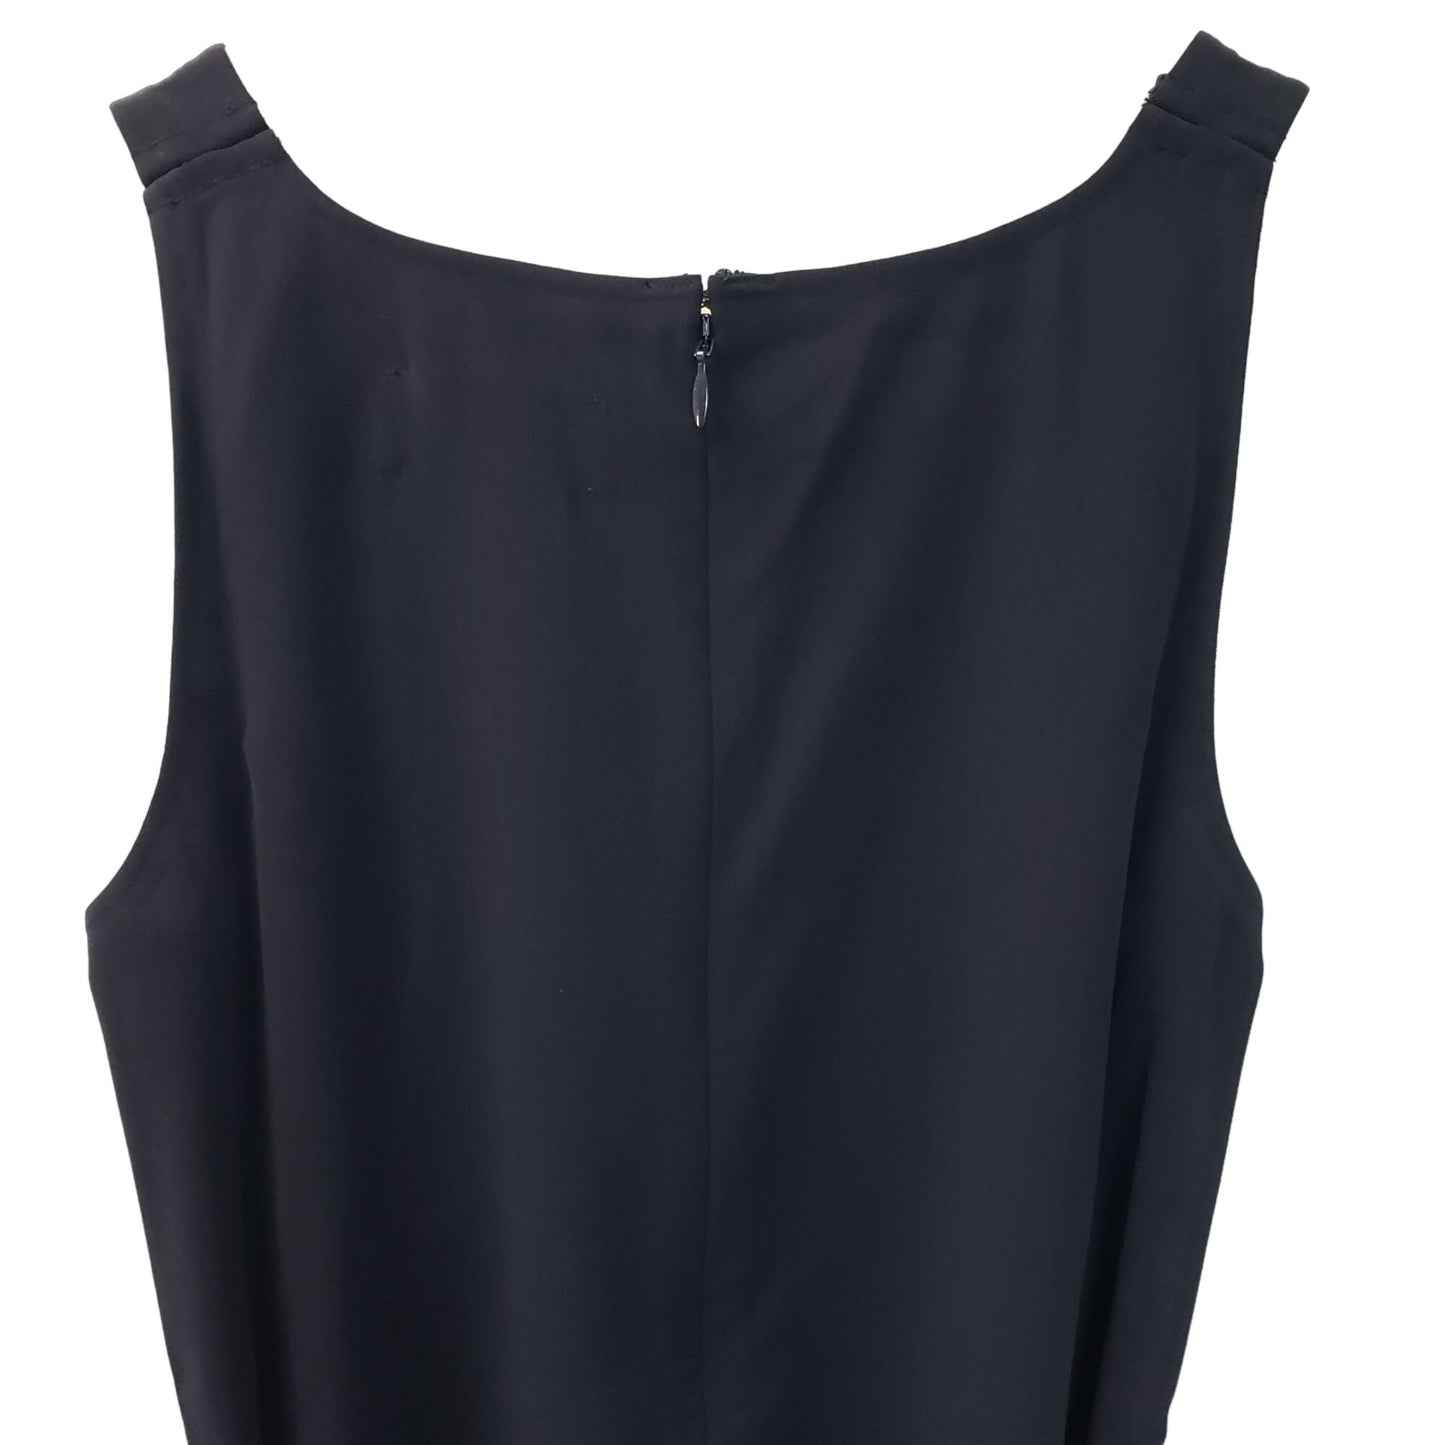 NWT Ministry of Supply Swift Sheath Dress Size XS (2)